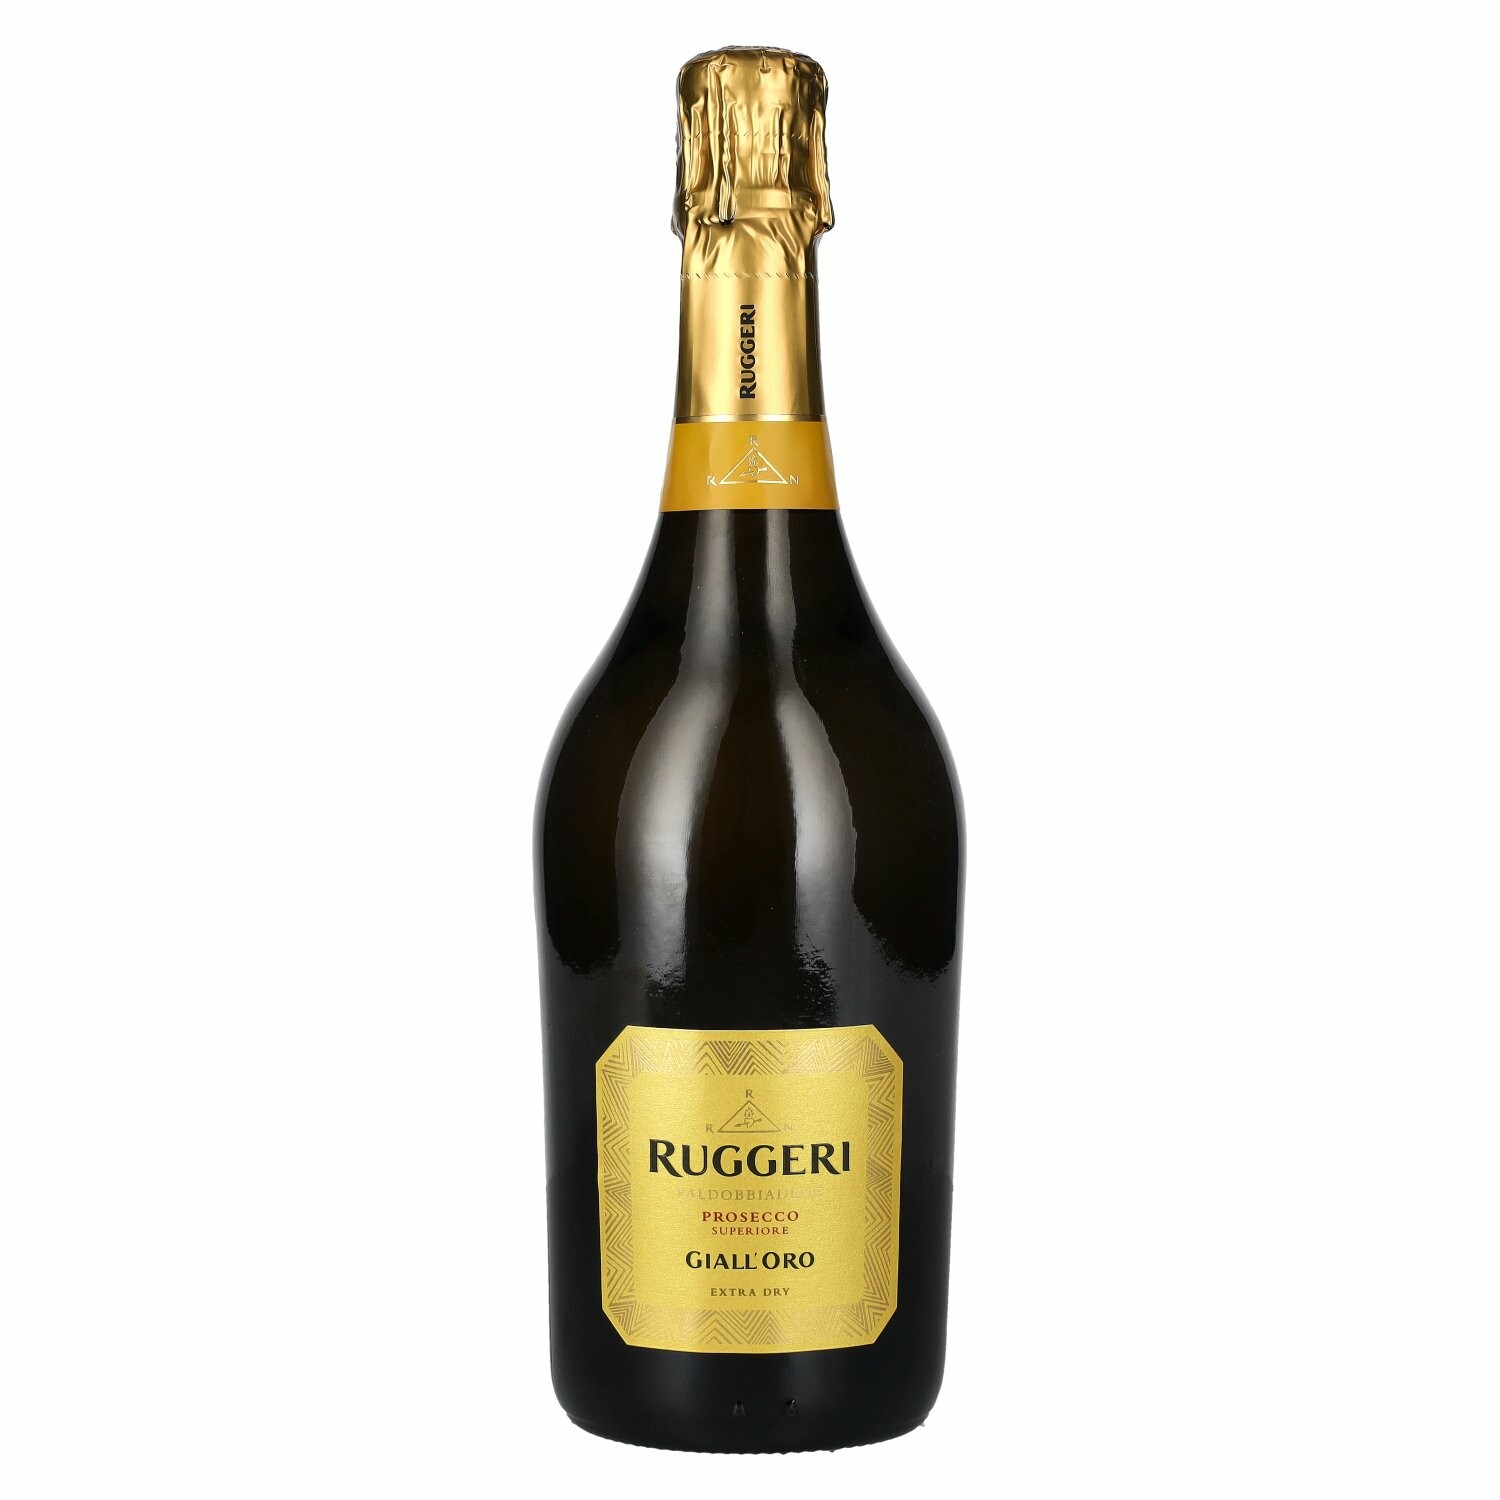 Ruggeri Giall' Oro Prosecco Superiore Extra Dry 11% Vol. 0,75l